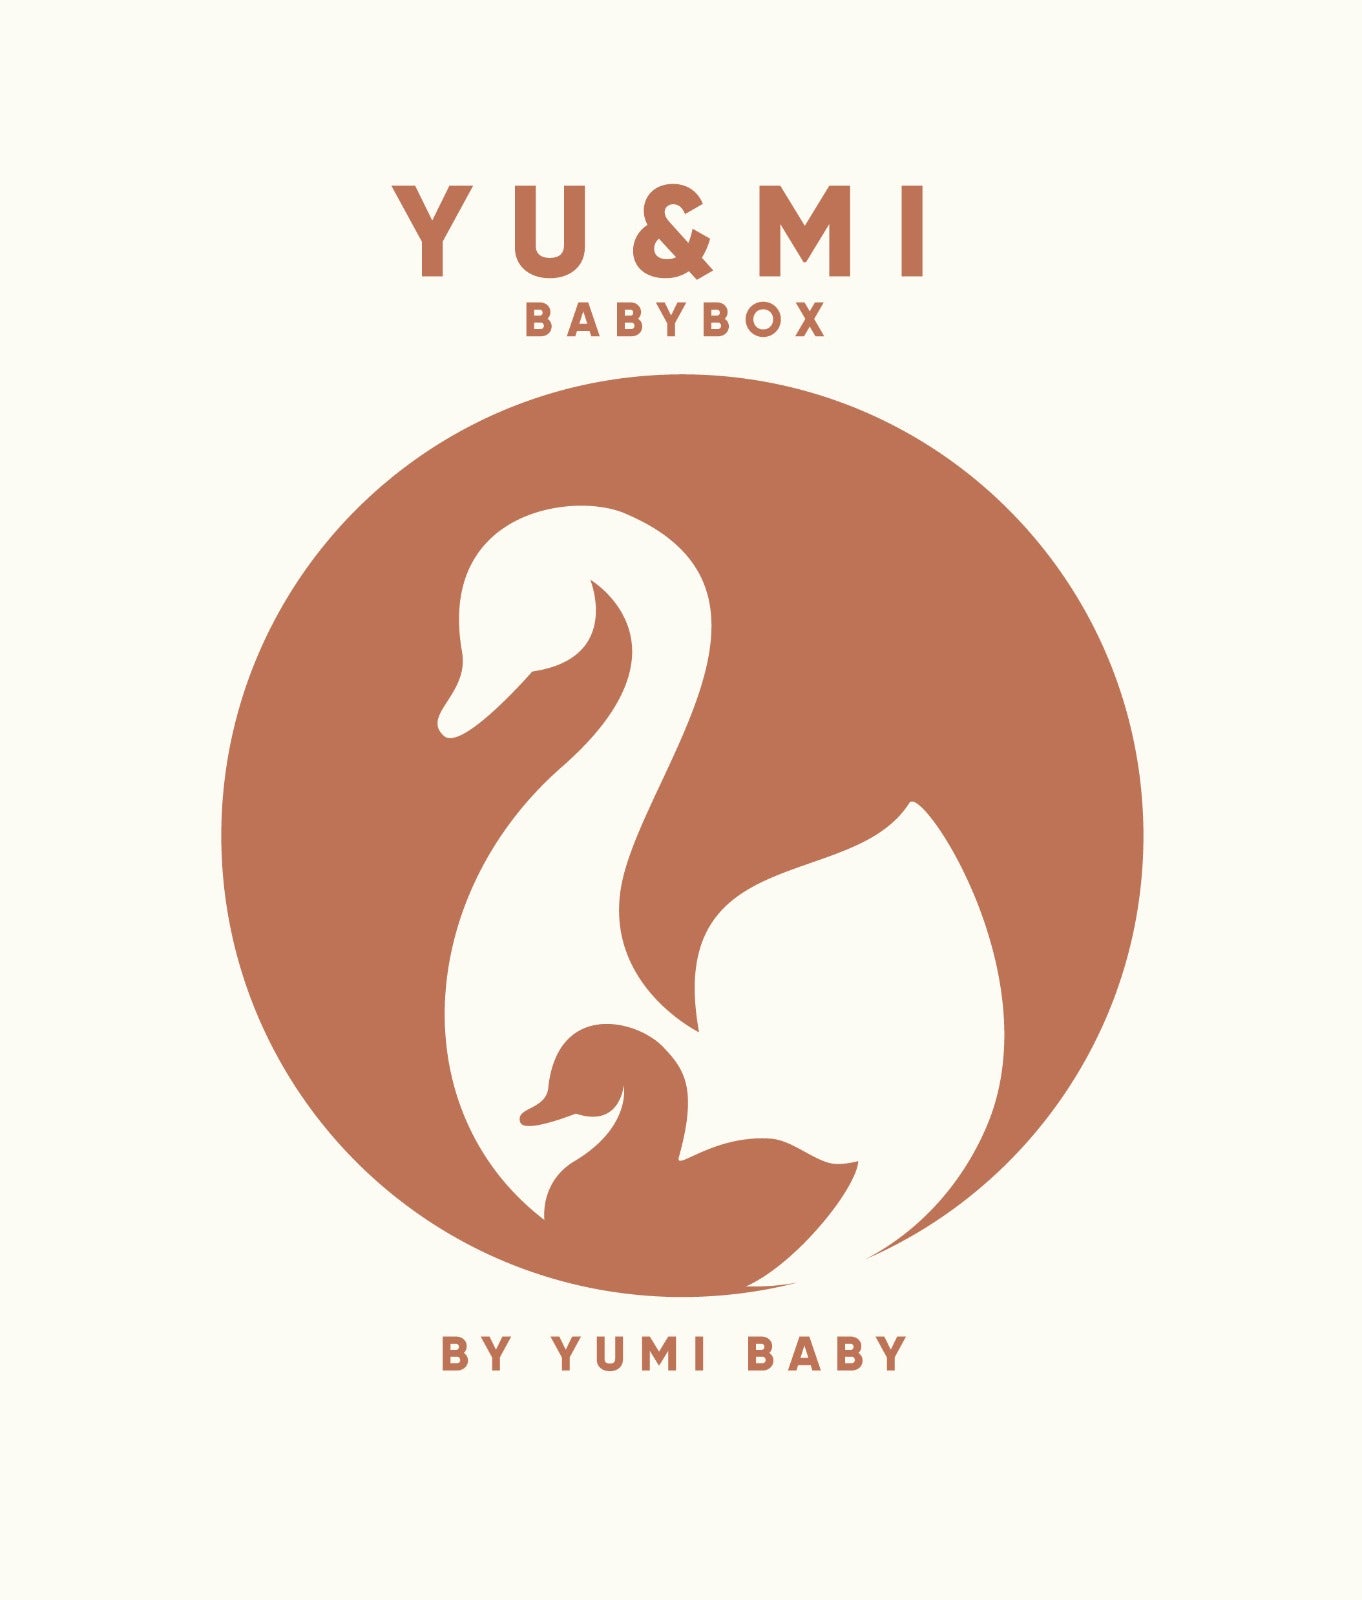 Yu & mi Goodybag van Yumi Baby - een gestileerd logo met de elegante silhouetten van twee zwanen, een volwassene en een jong, waardoor een verzorgende en luxe merkidentiteit voor baby's ontstaat